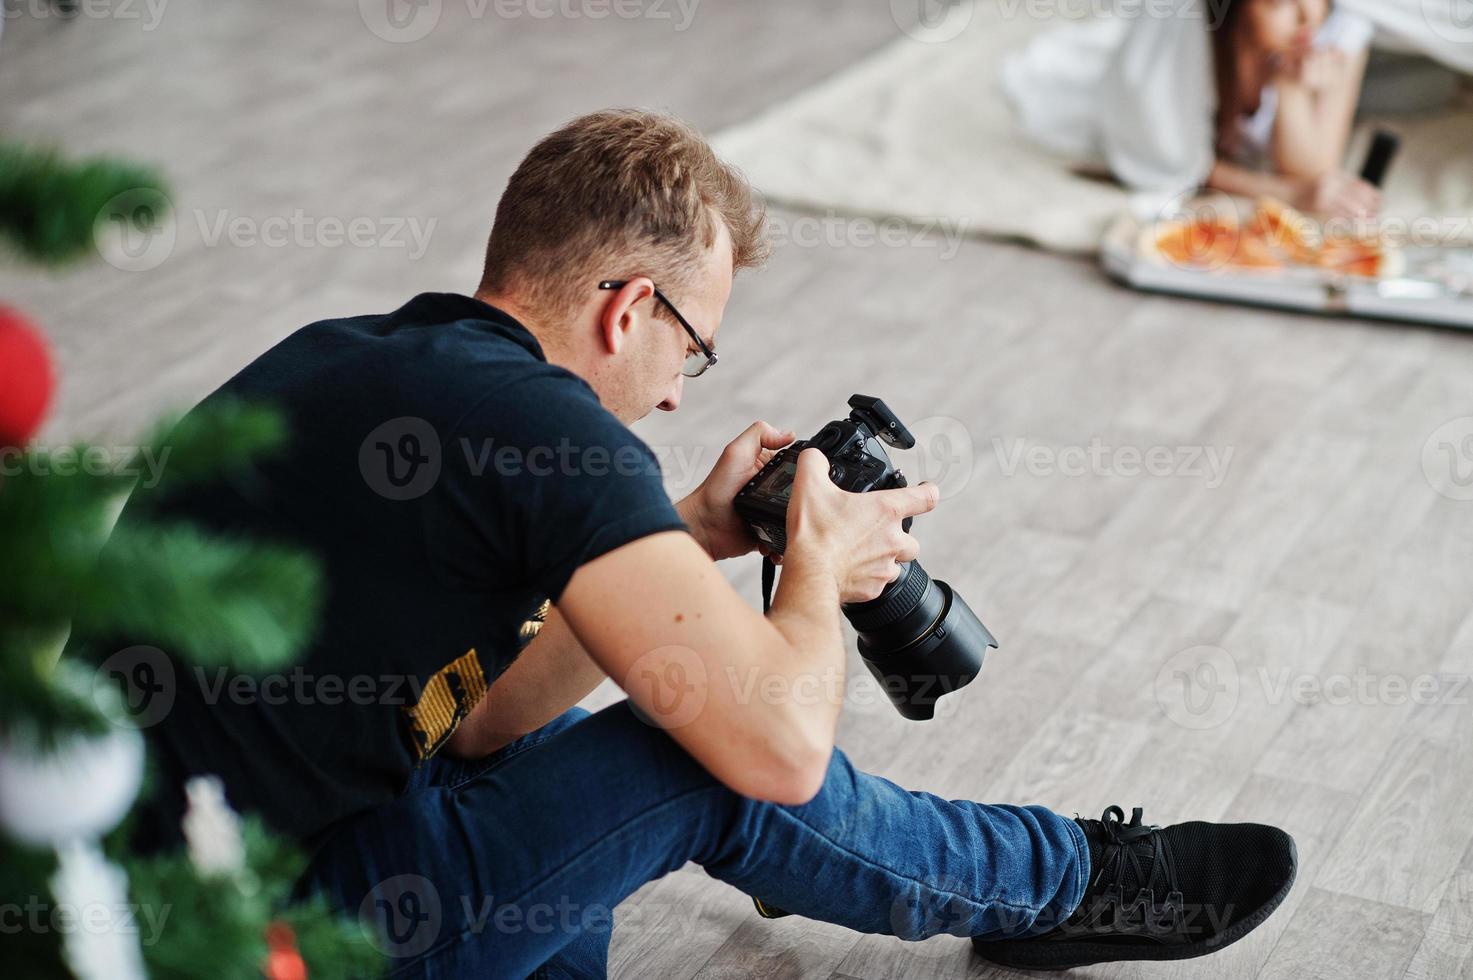 el fotógrafo de hombre dispara a las niñas gemelas de estudio que están comiendo pizza. fotógrafo profesional en el trabajo. foto